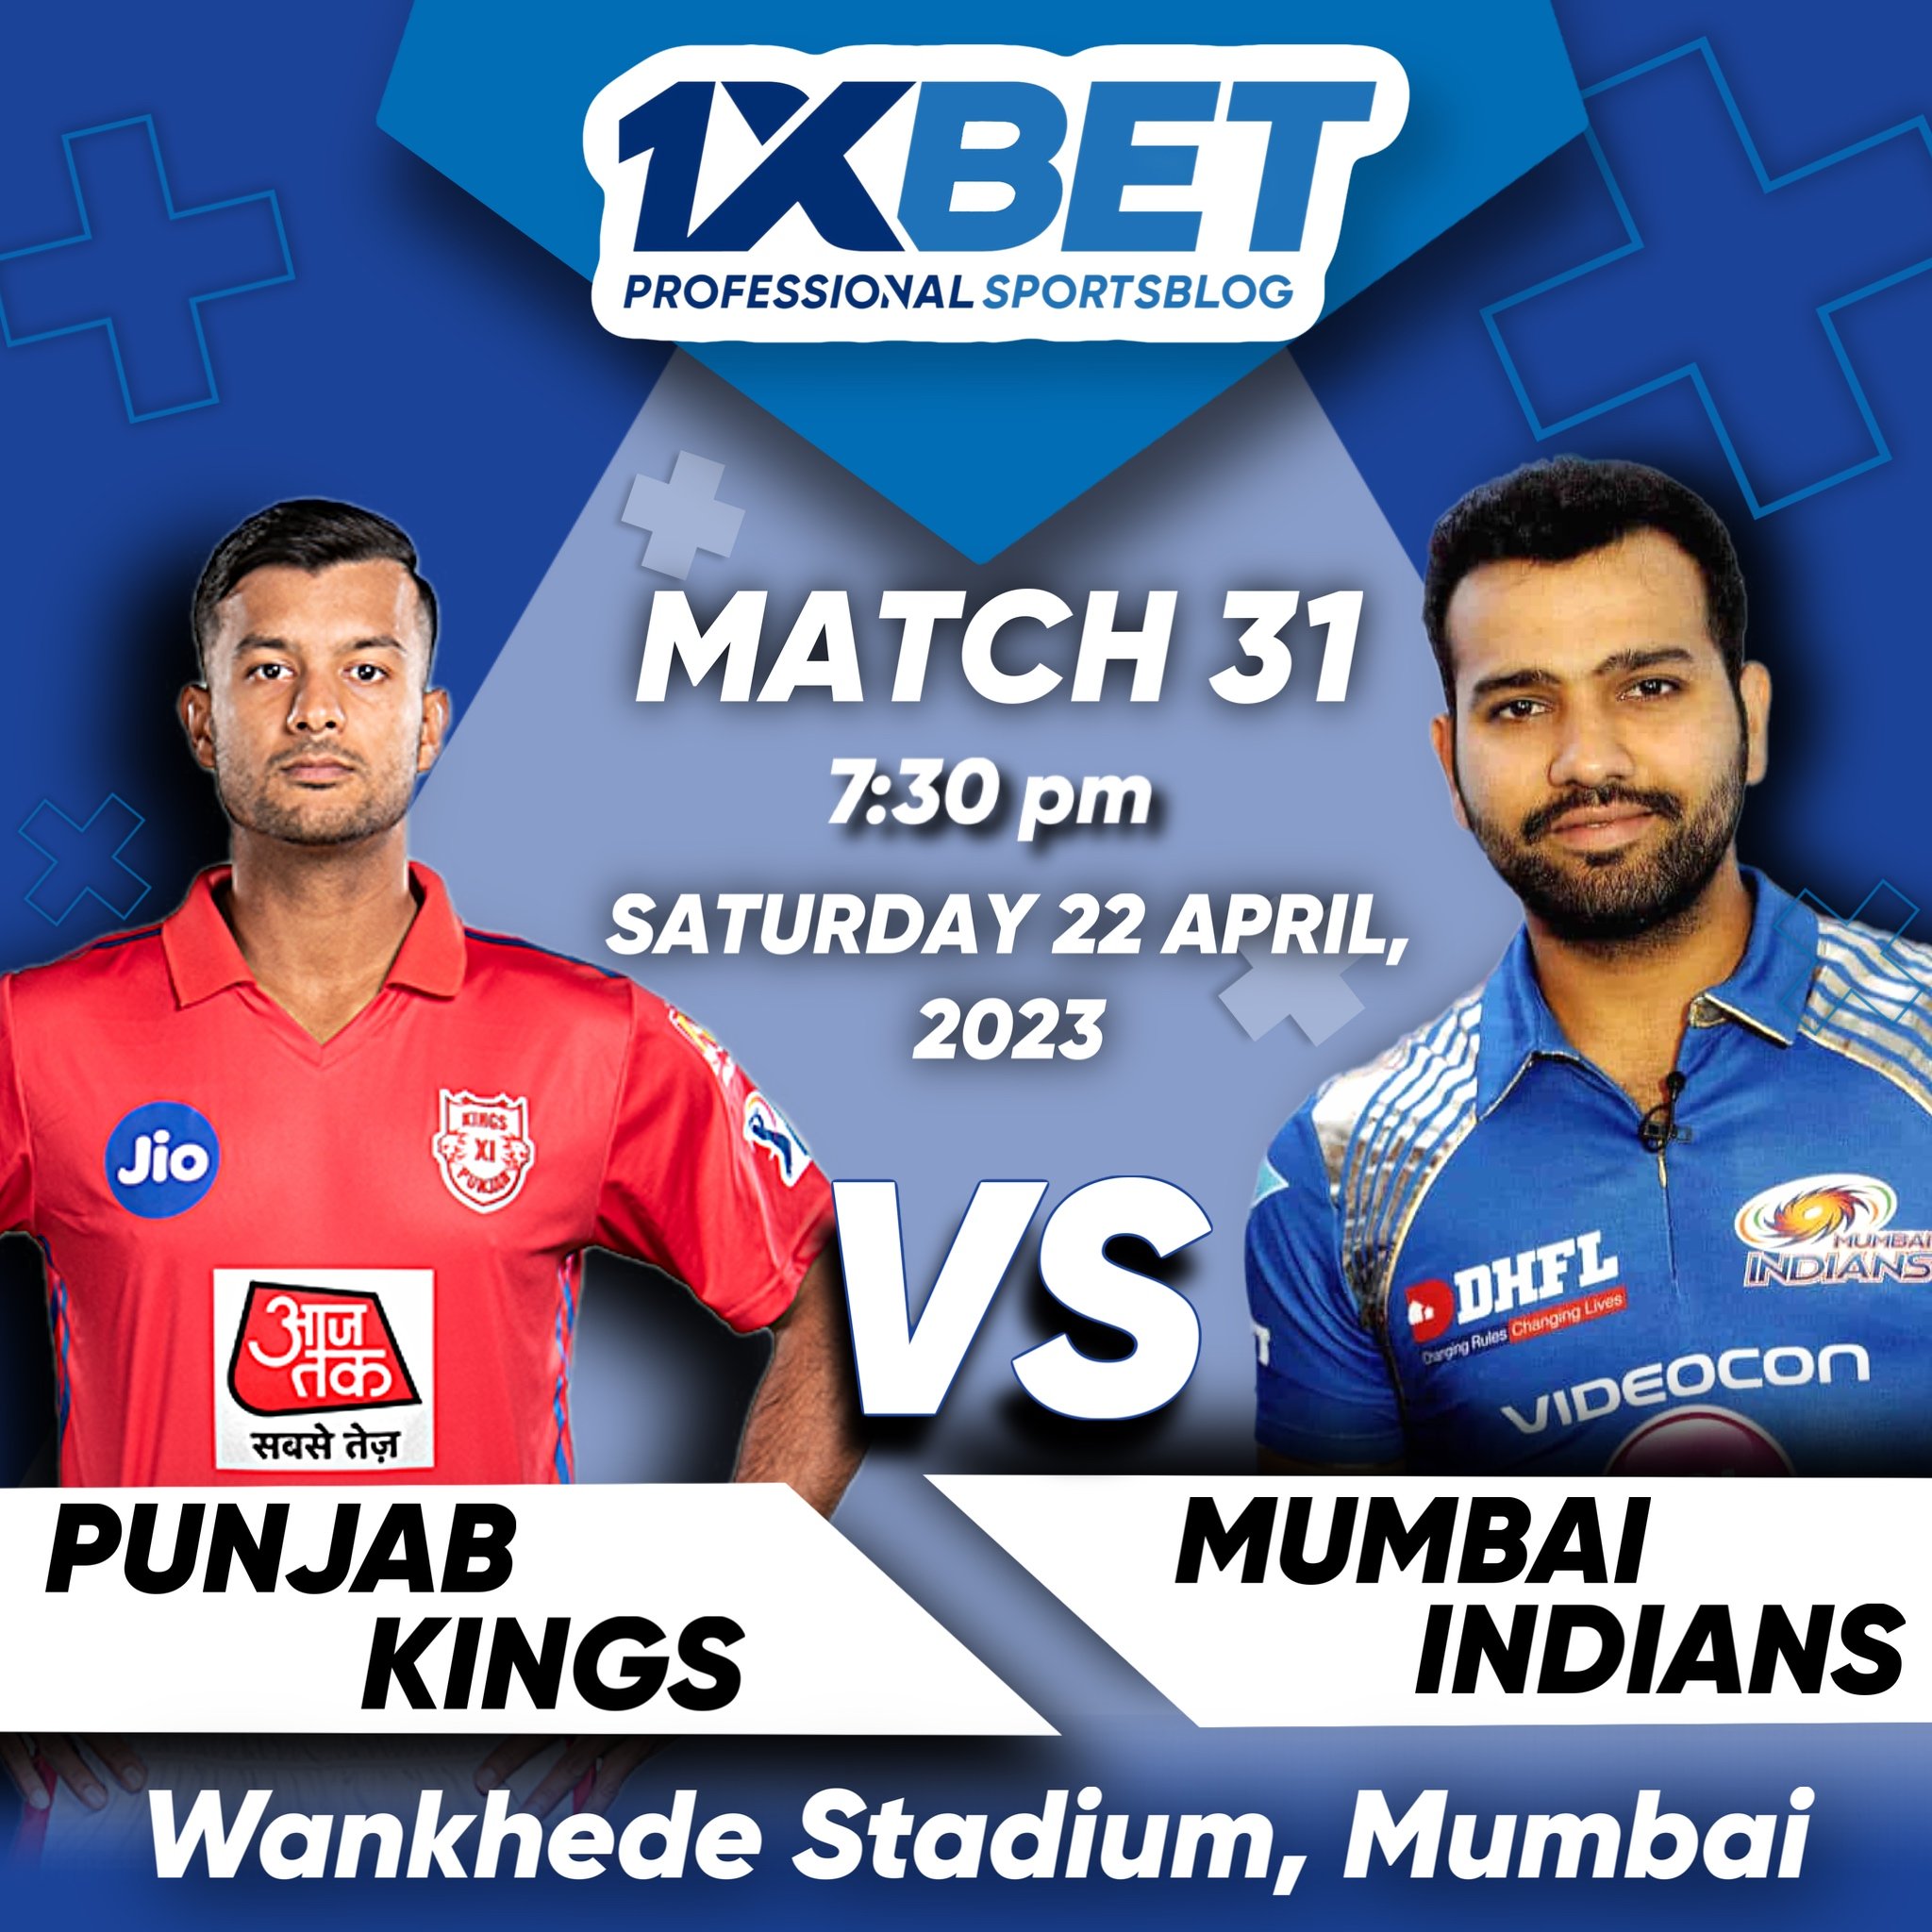 Mumbai Indians vs Punjab Kings, IPL 2023, 31st Match Analysis